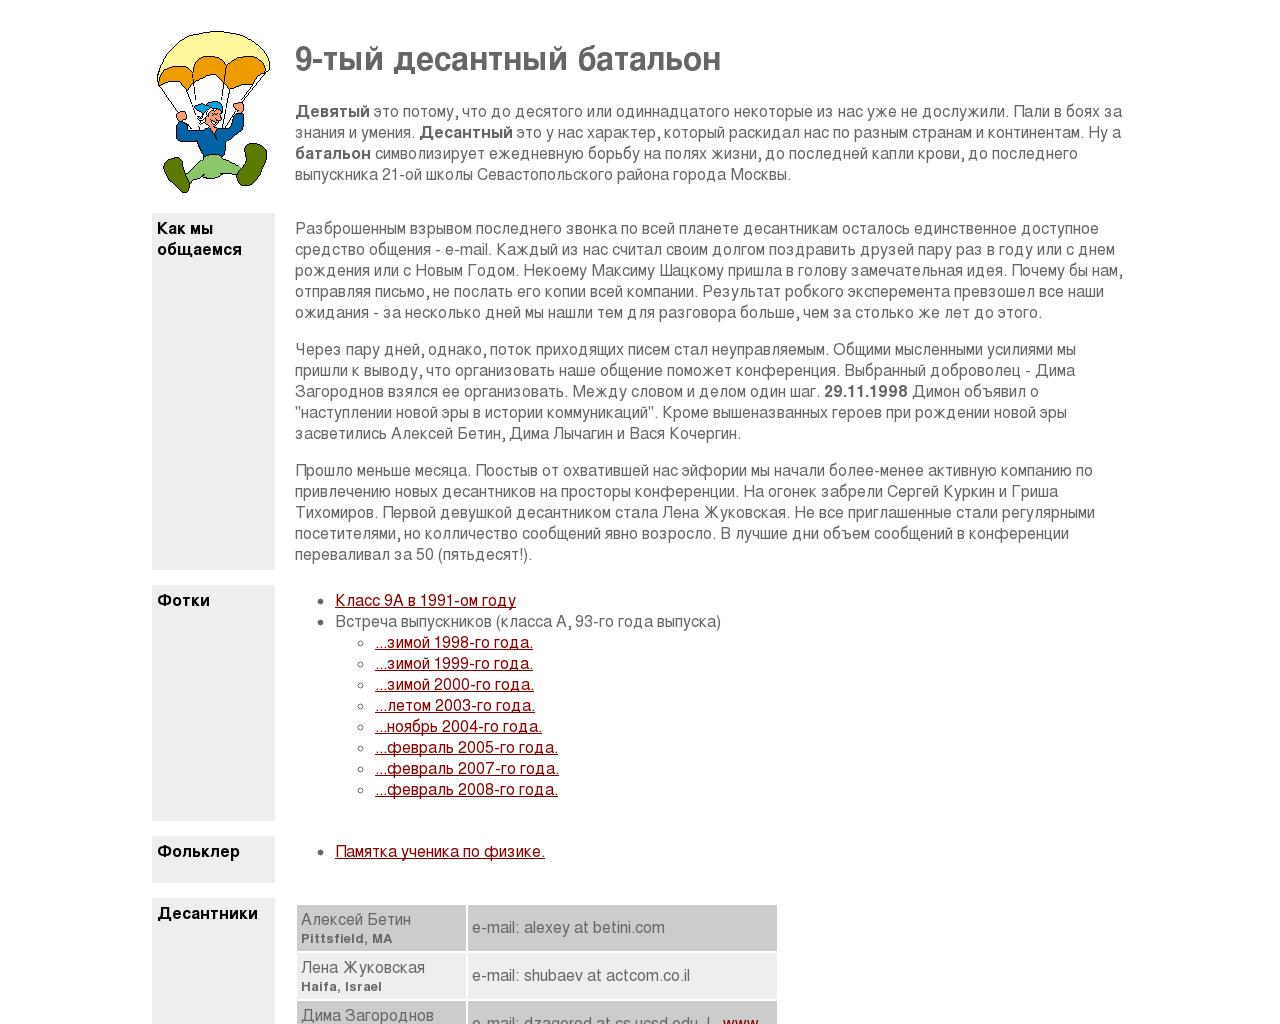 Изображение сайта batalion.ru в разрешении 1280x1024